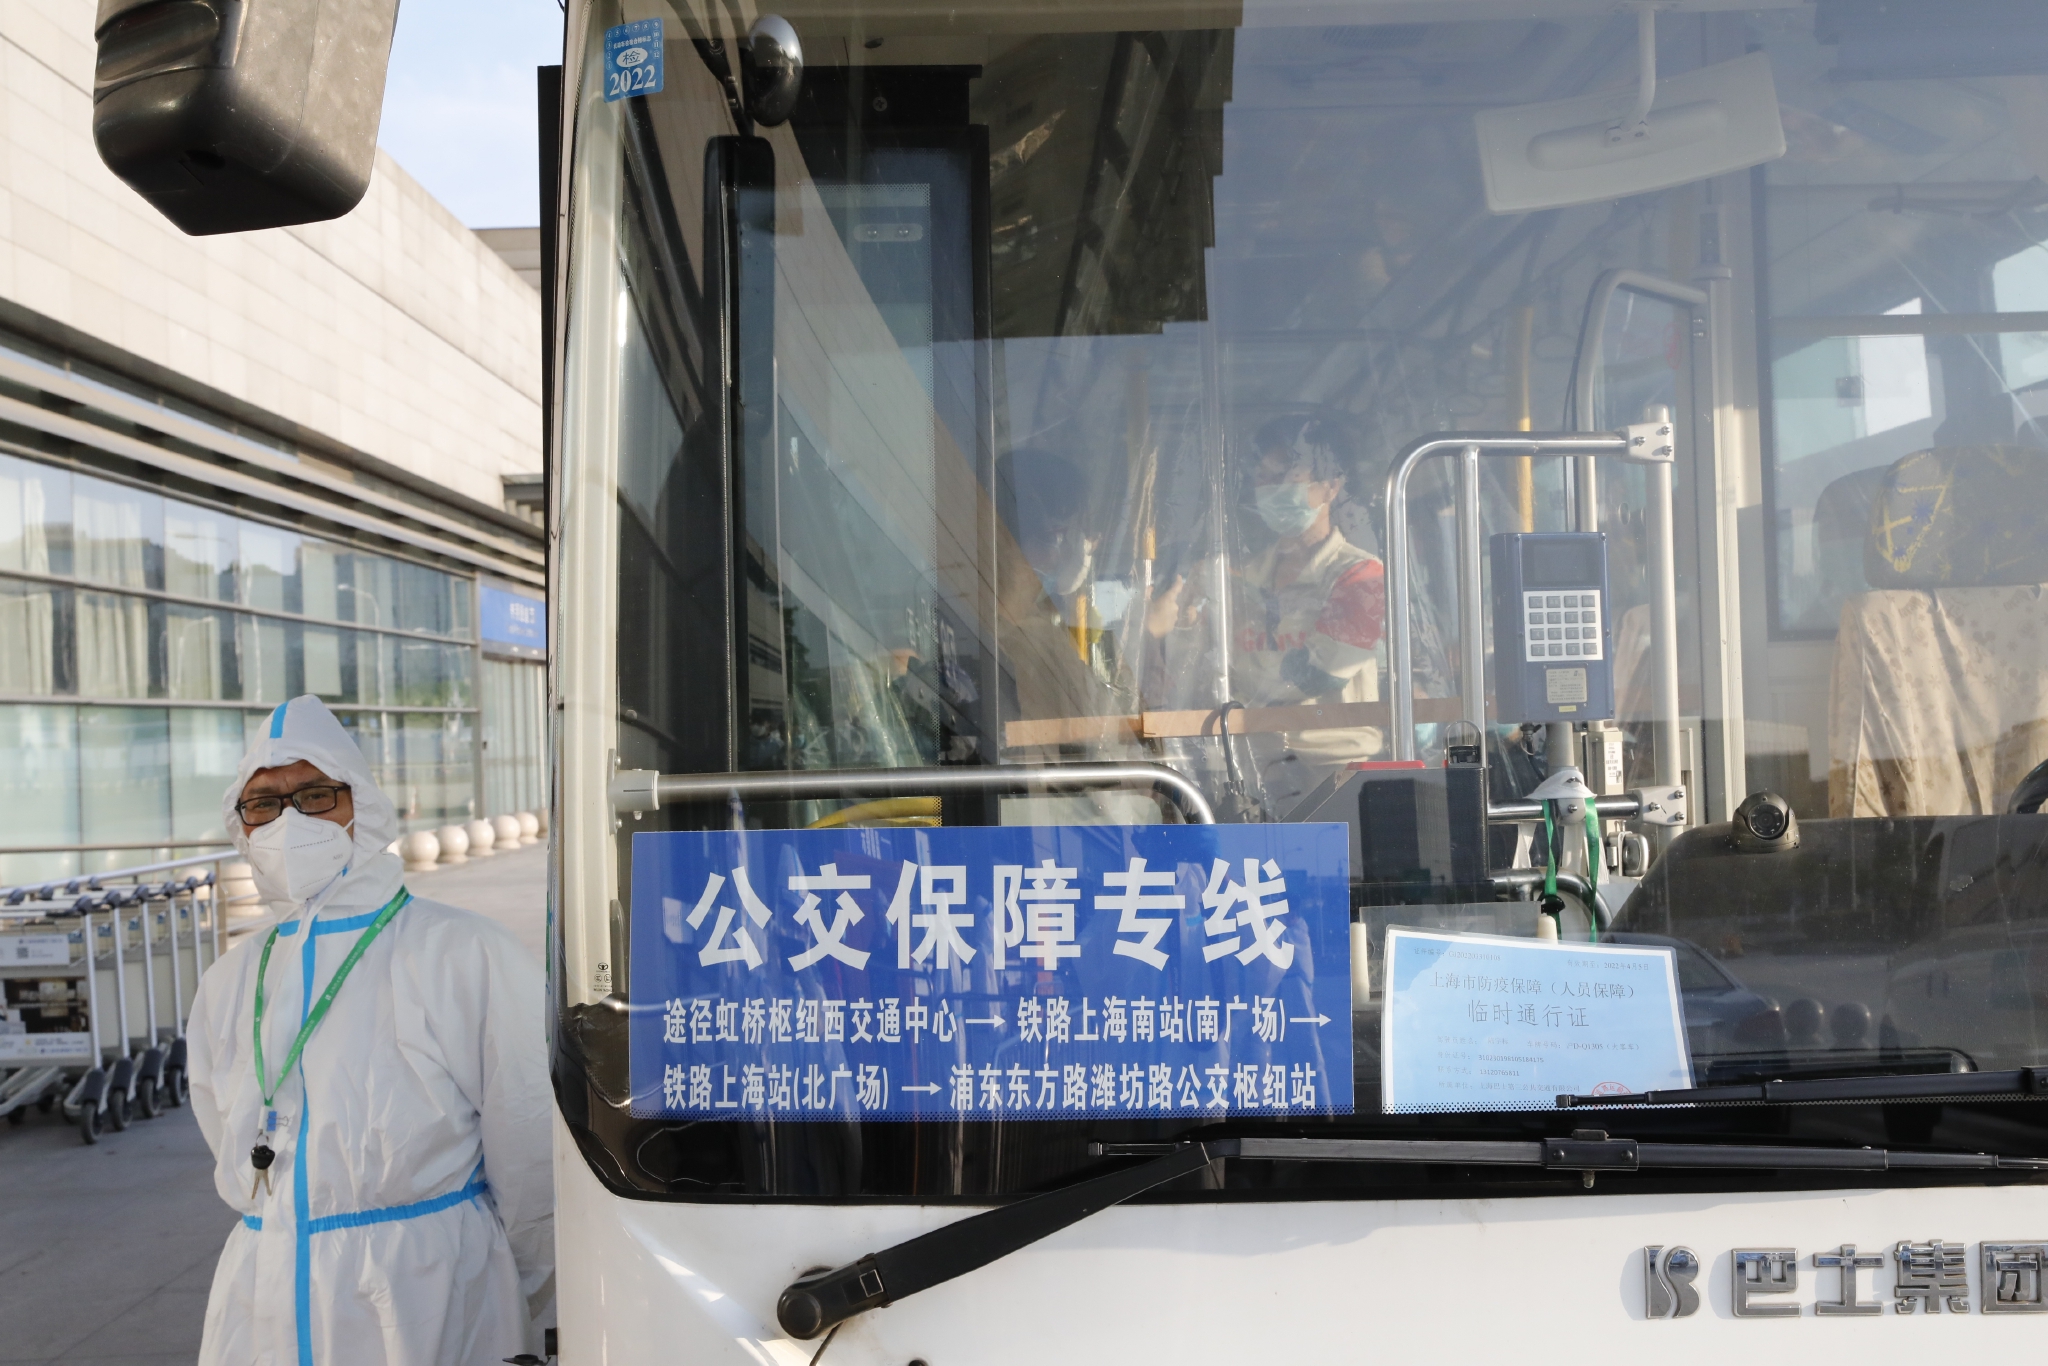 串联巴士将乘客转送到浦东潍坊。